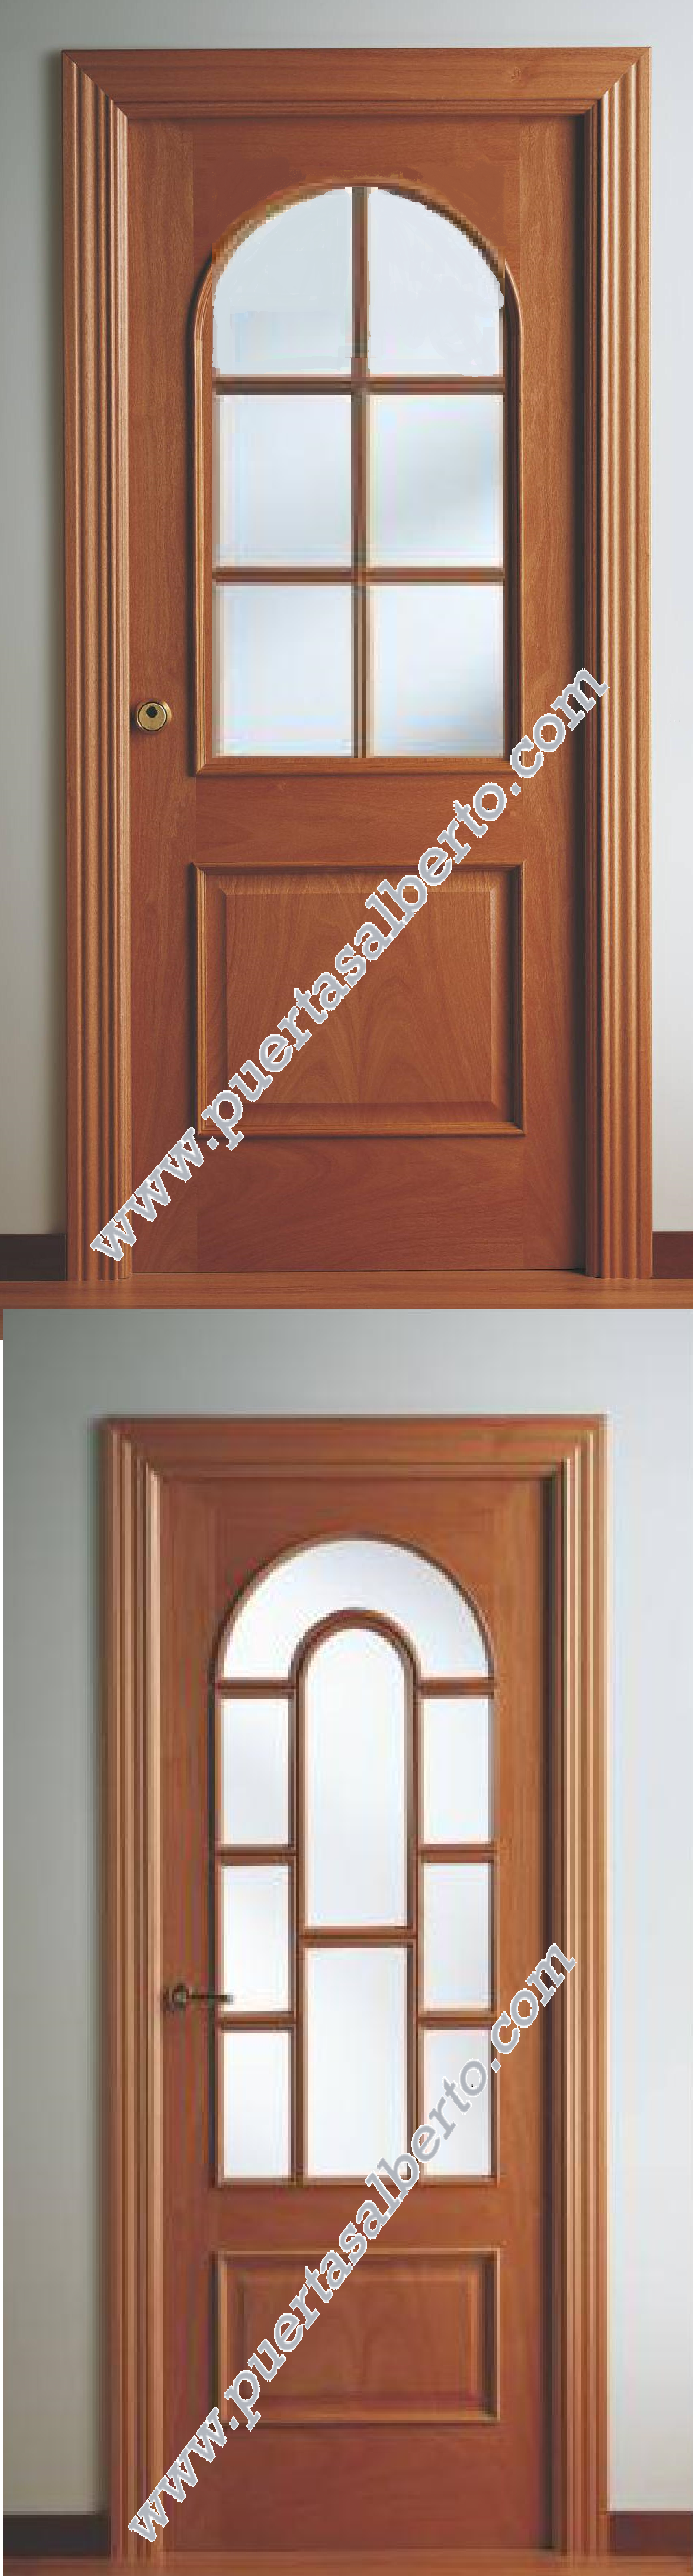 Catálogo de Puertas Interior Clásicas